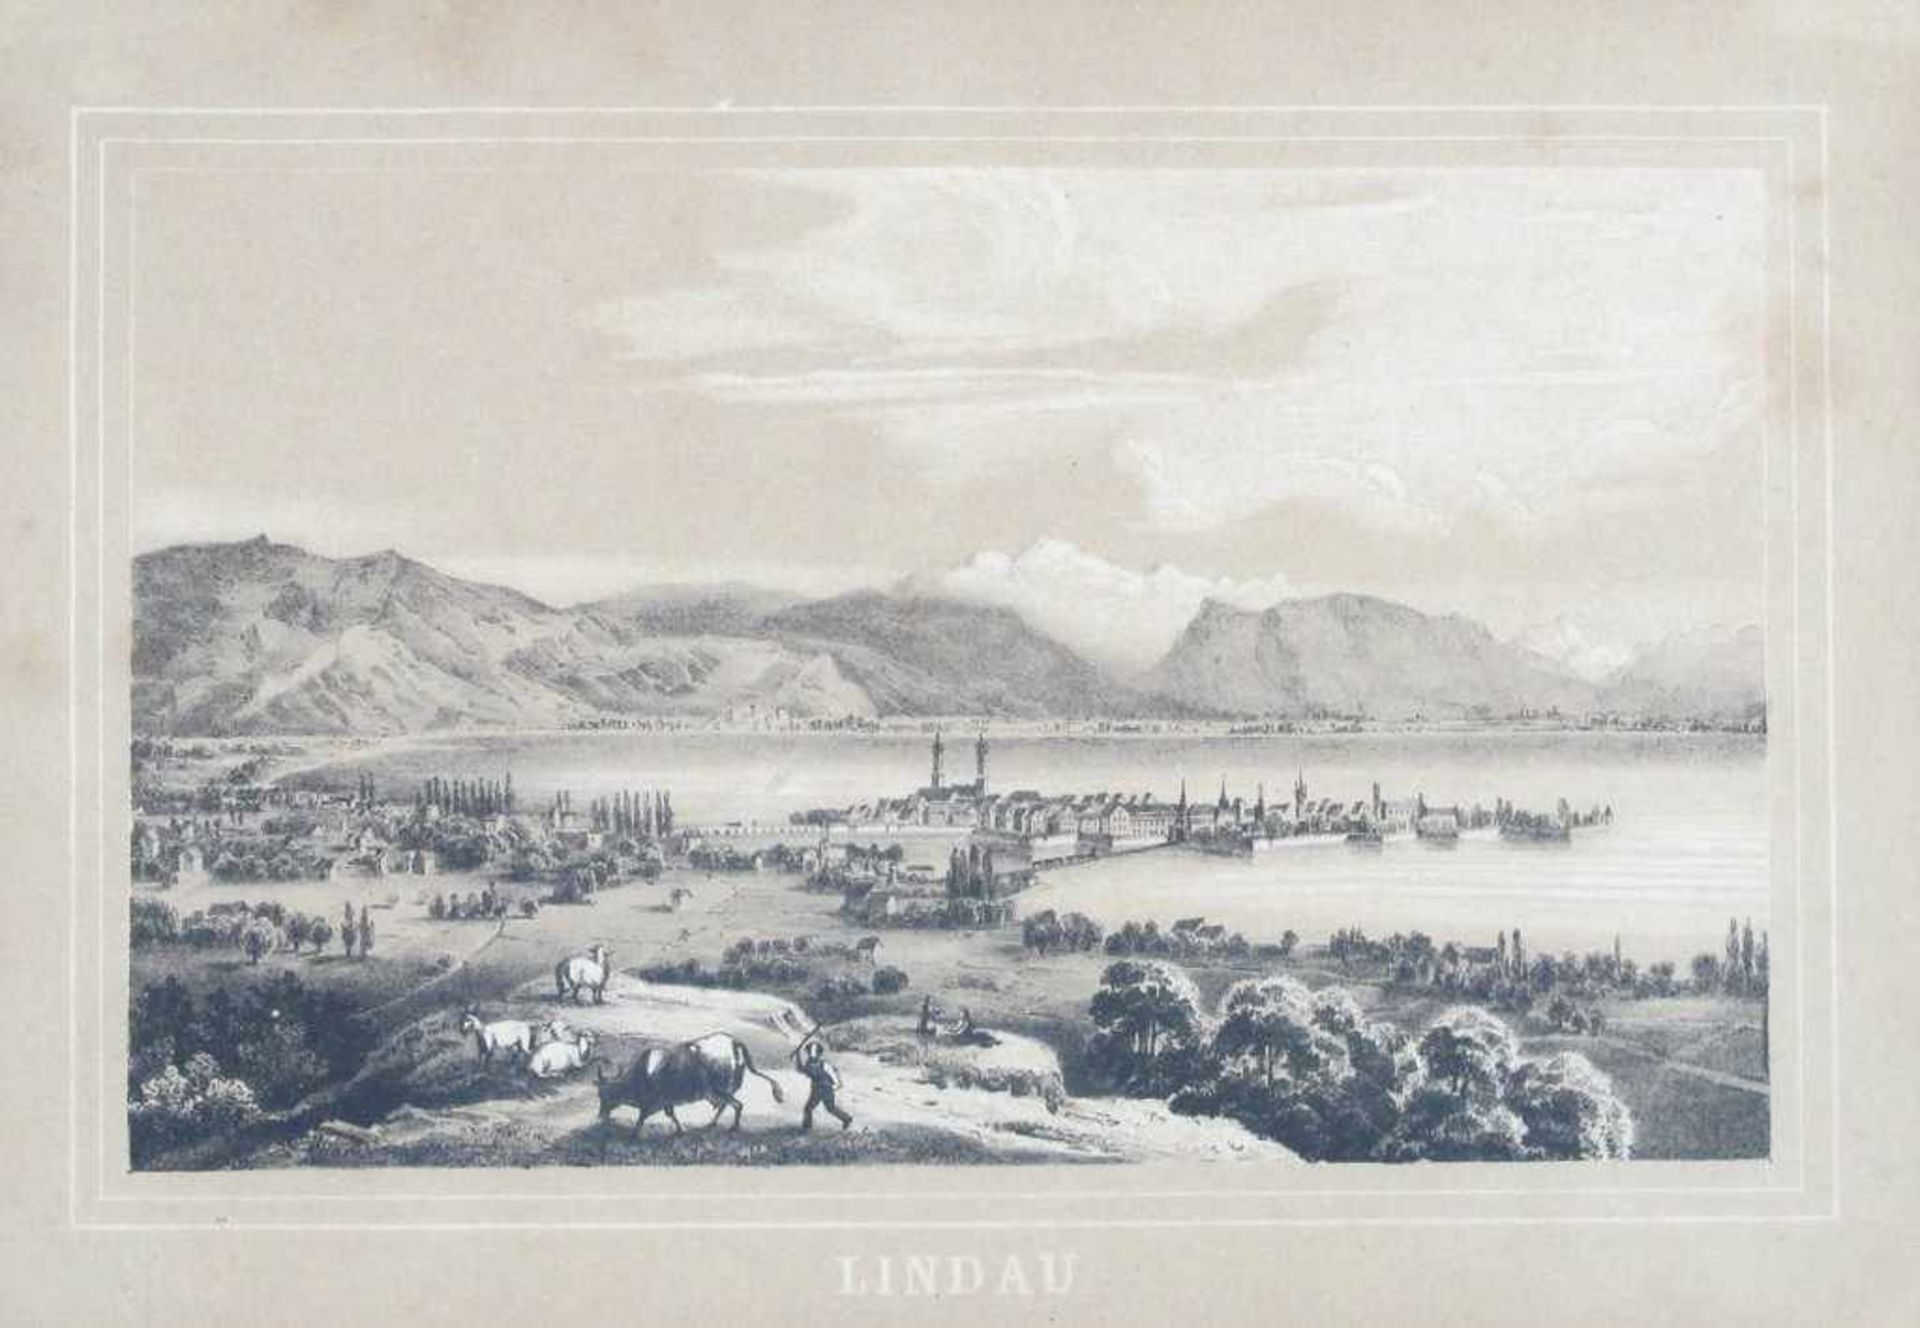 Lindau. Blick vom Hoyerberg auf die Insel mit Eisenbahndamm, im Hintergrund Gebirgsmassiv, im